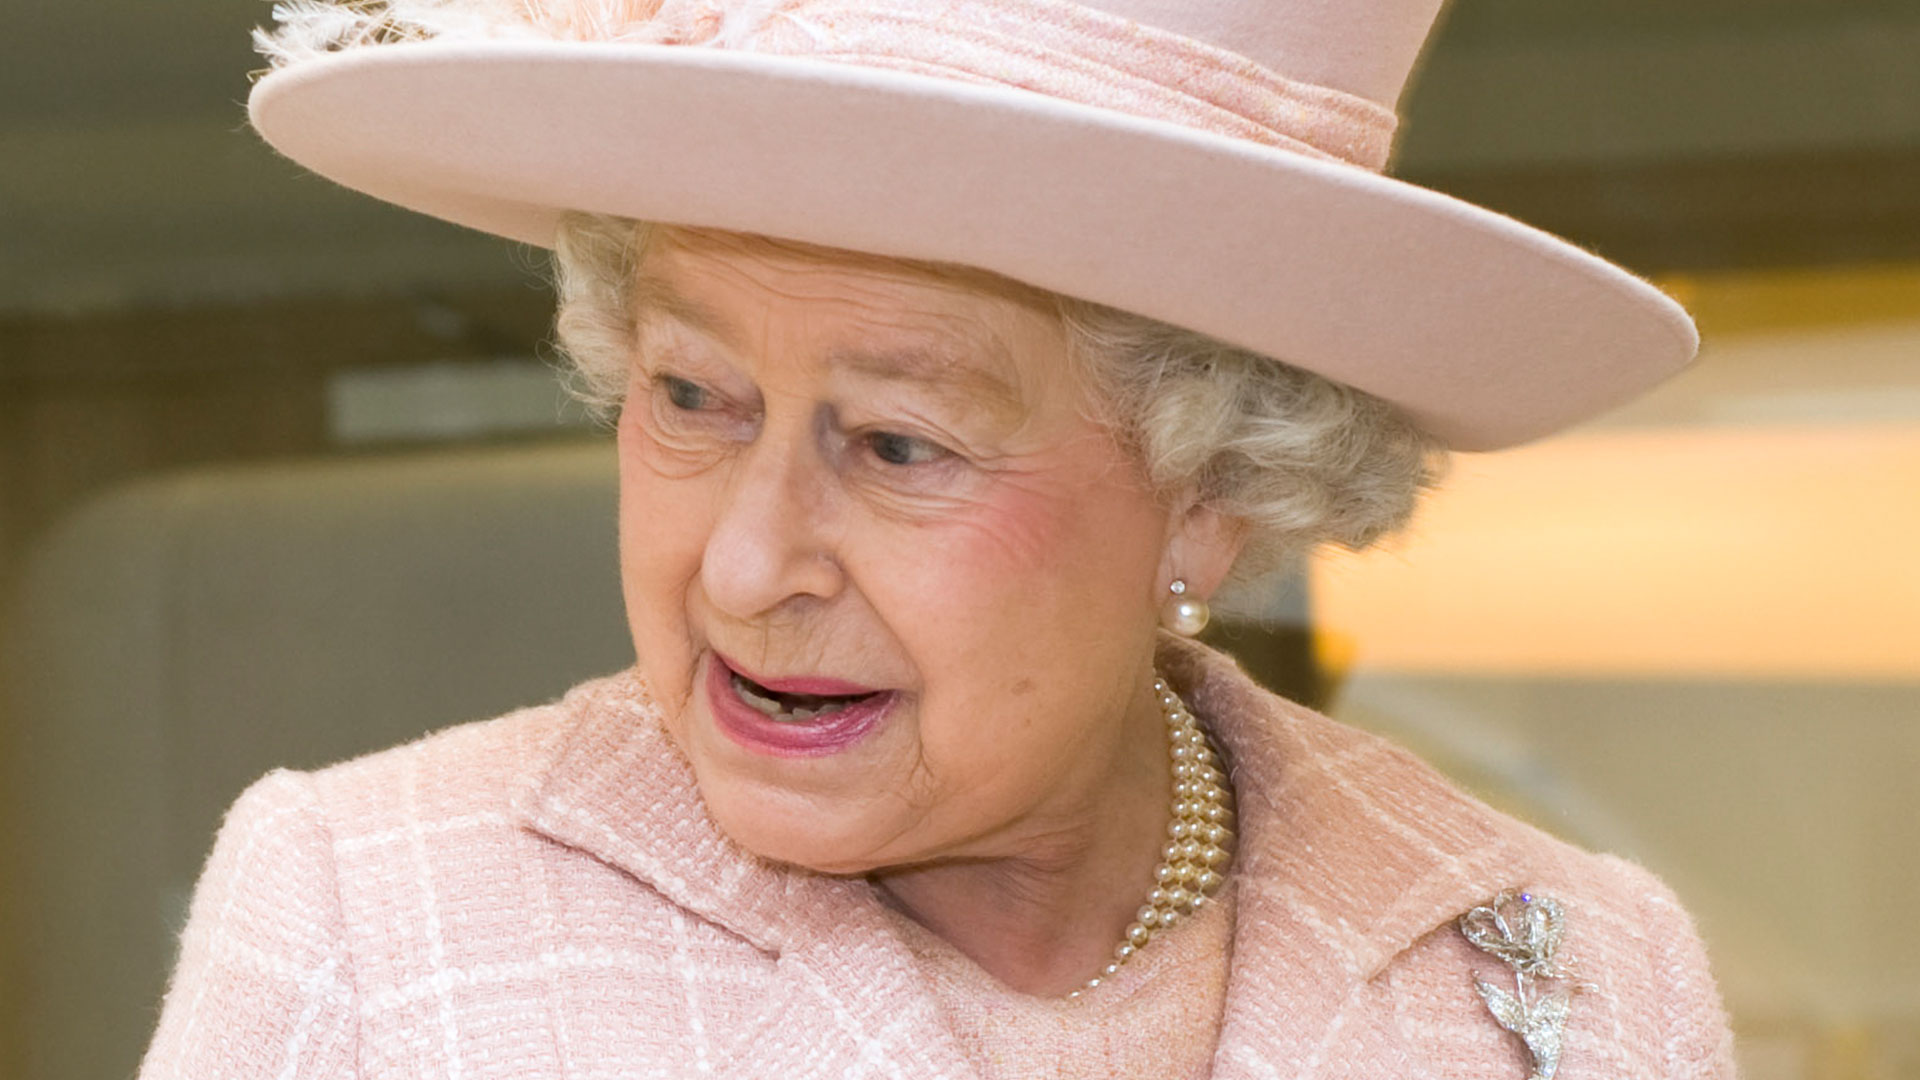 Etiquette expert reveals the VERY unusual way the Queen eats bananas